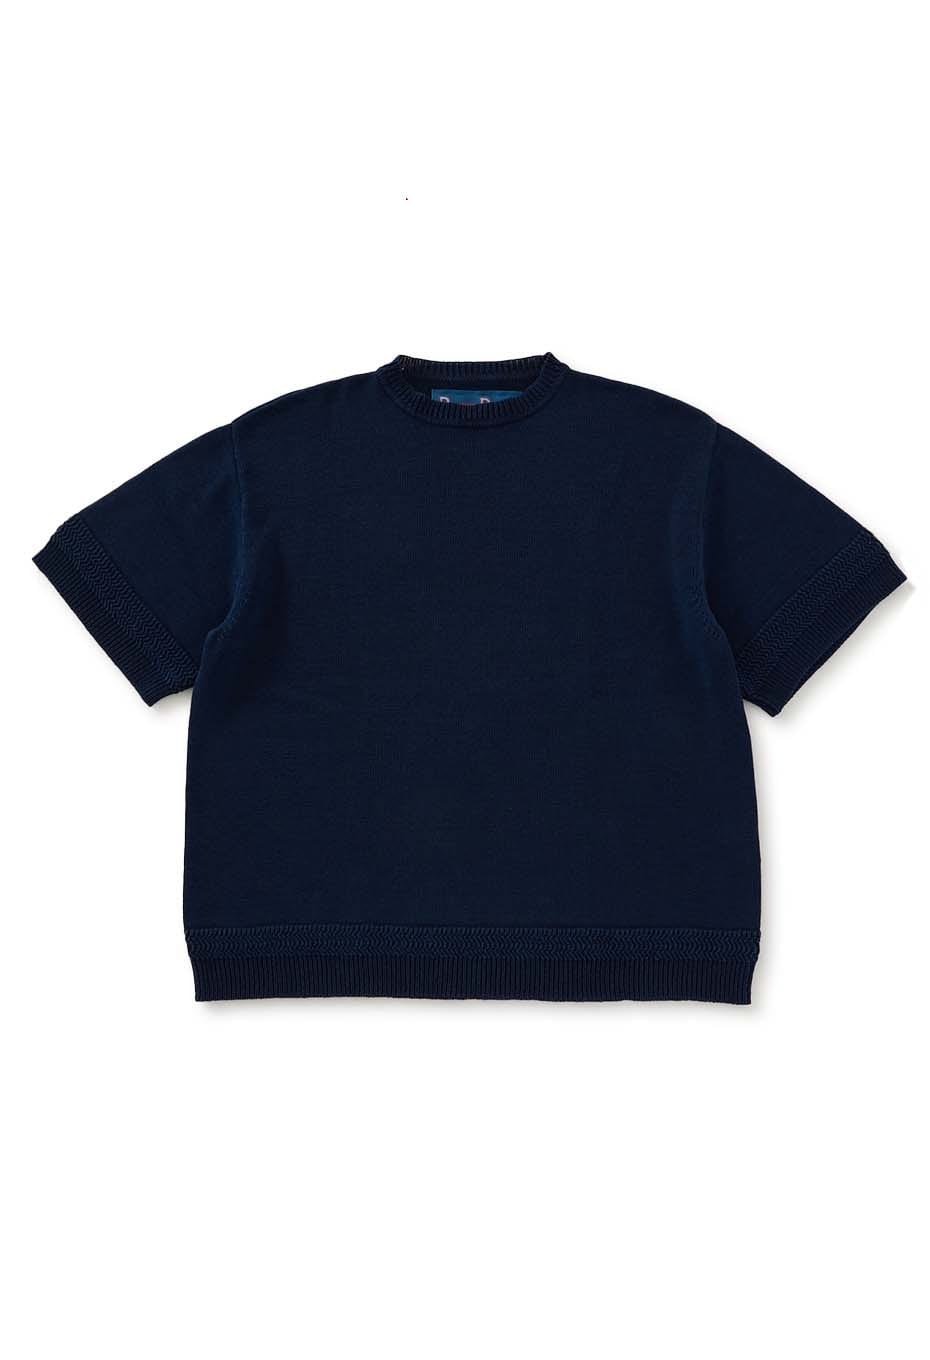 BLUE BLUE|ニット/セーター|インディゴダイド クルーネック コットン 